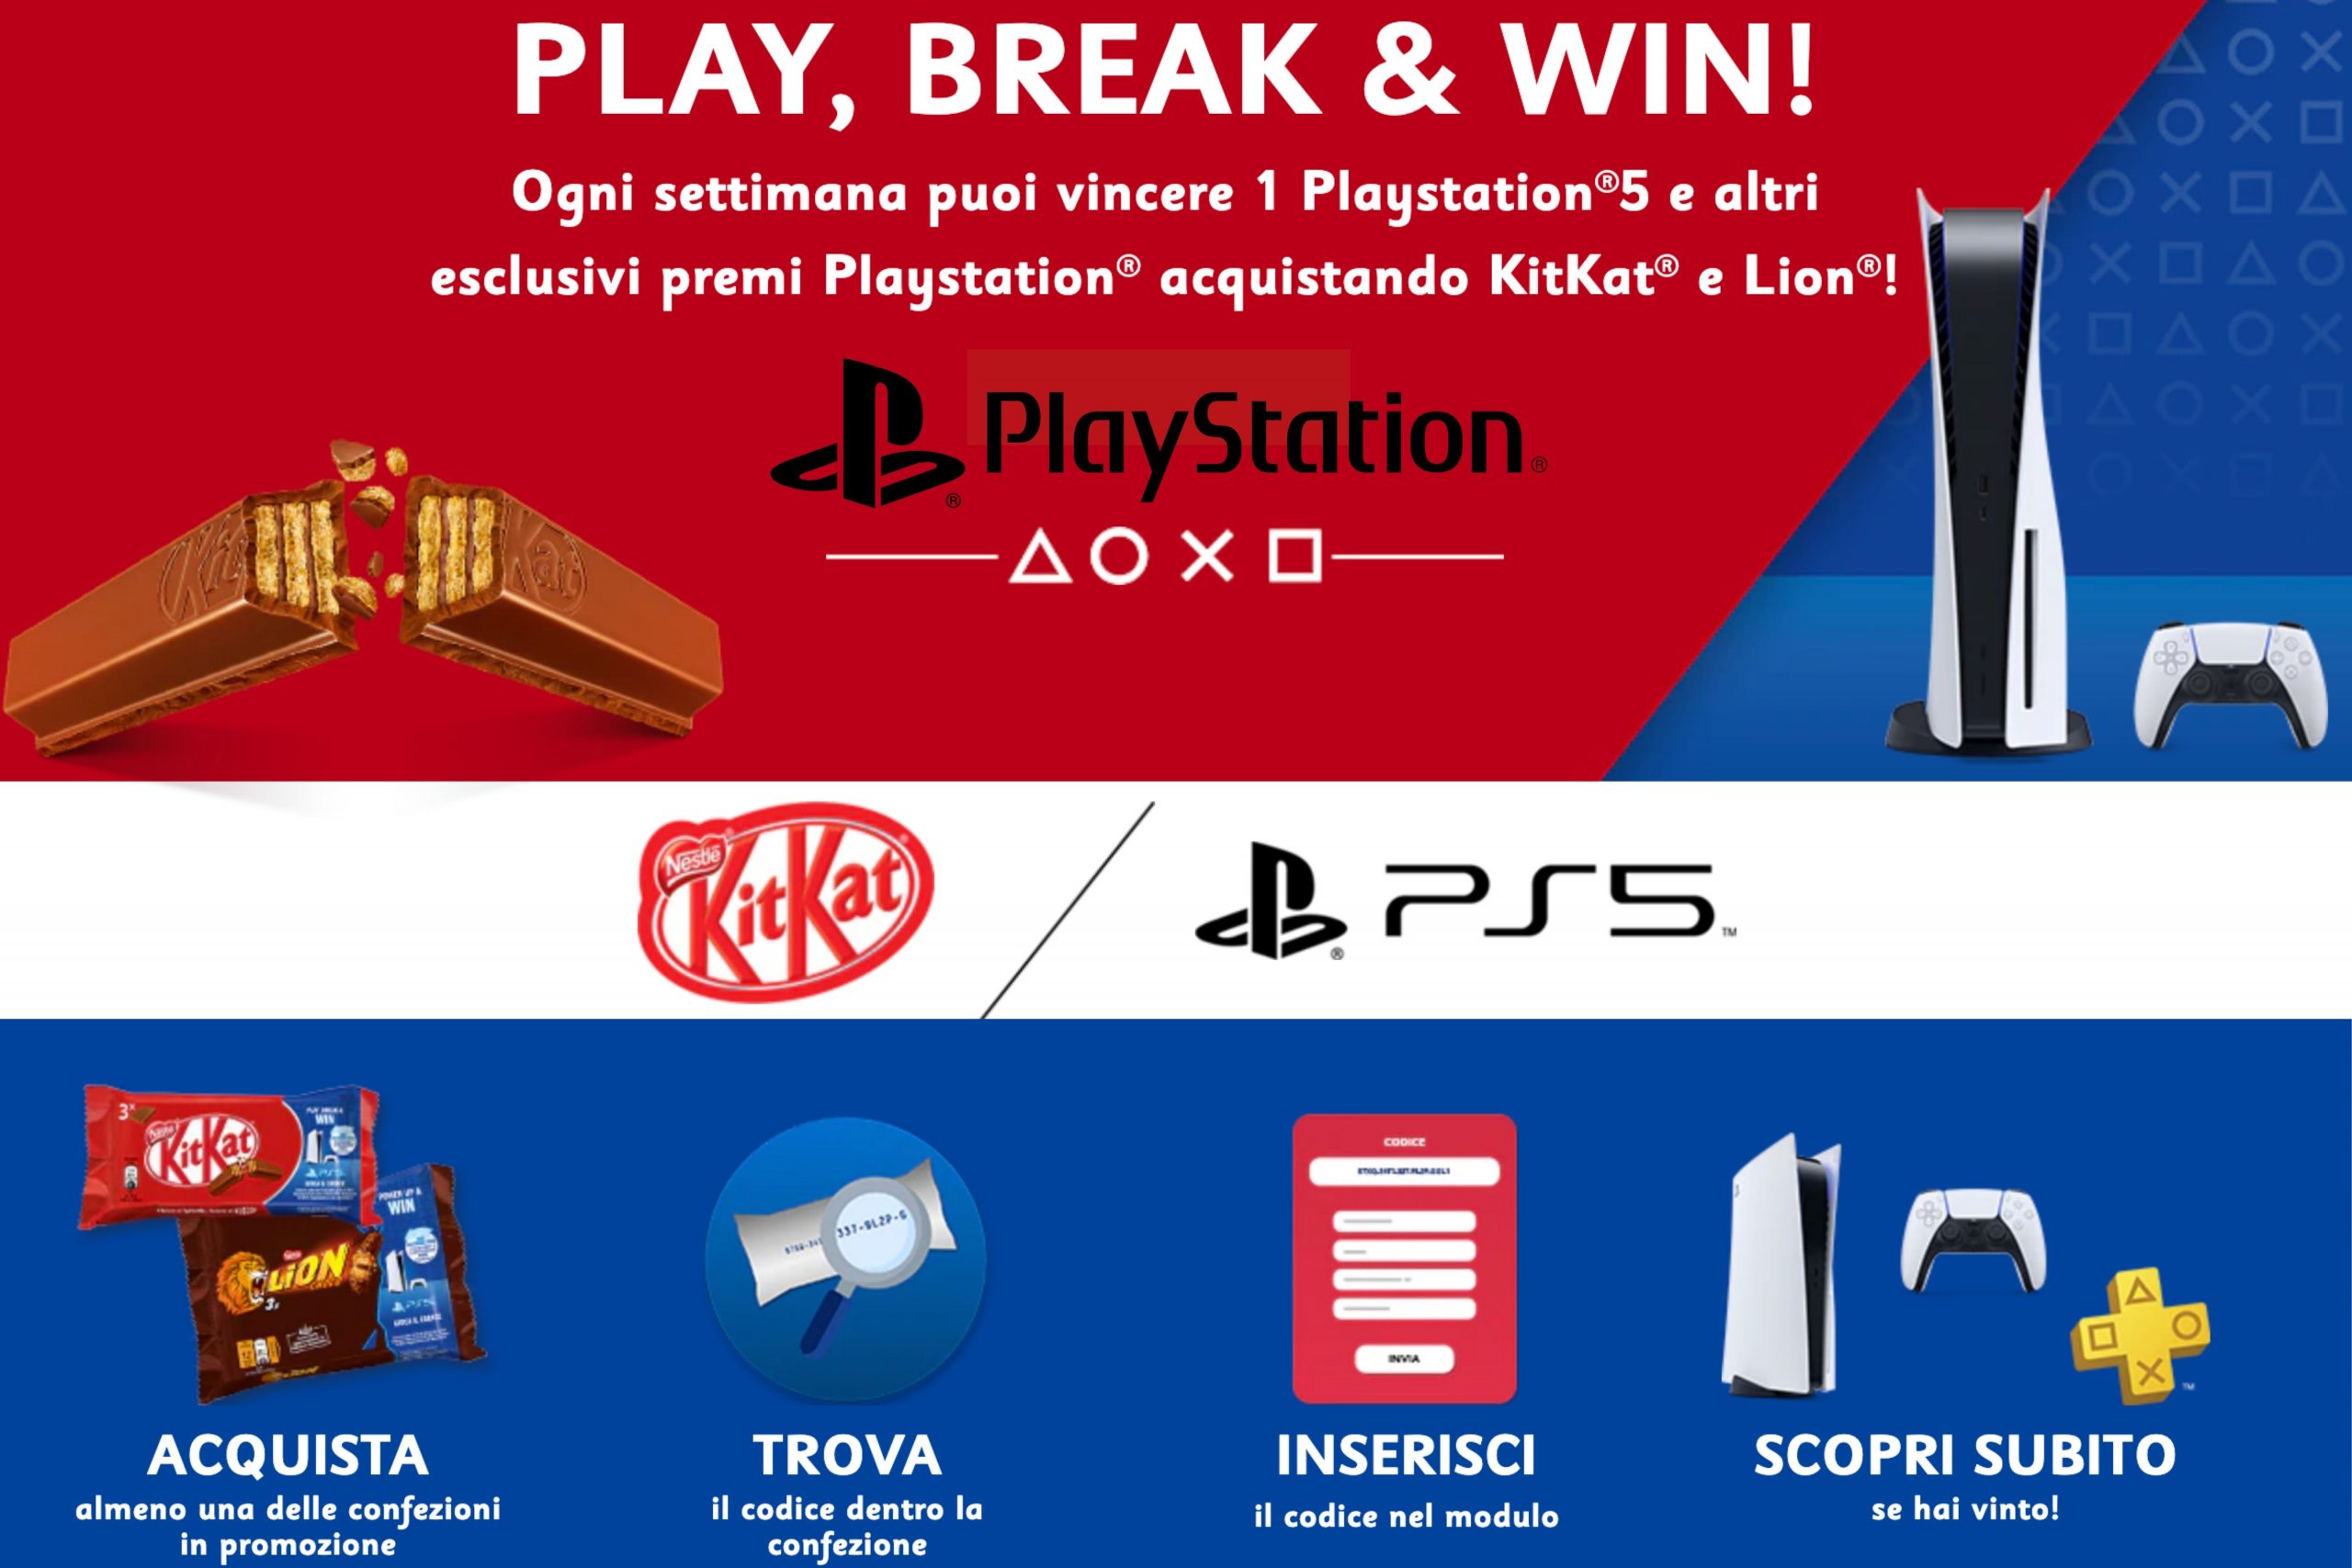 Concorso KitKat Play, Break & Win: Come vincere una Playstation 5